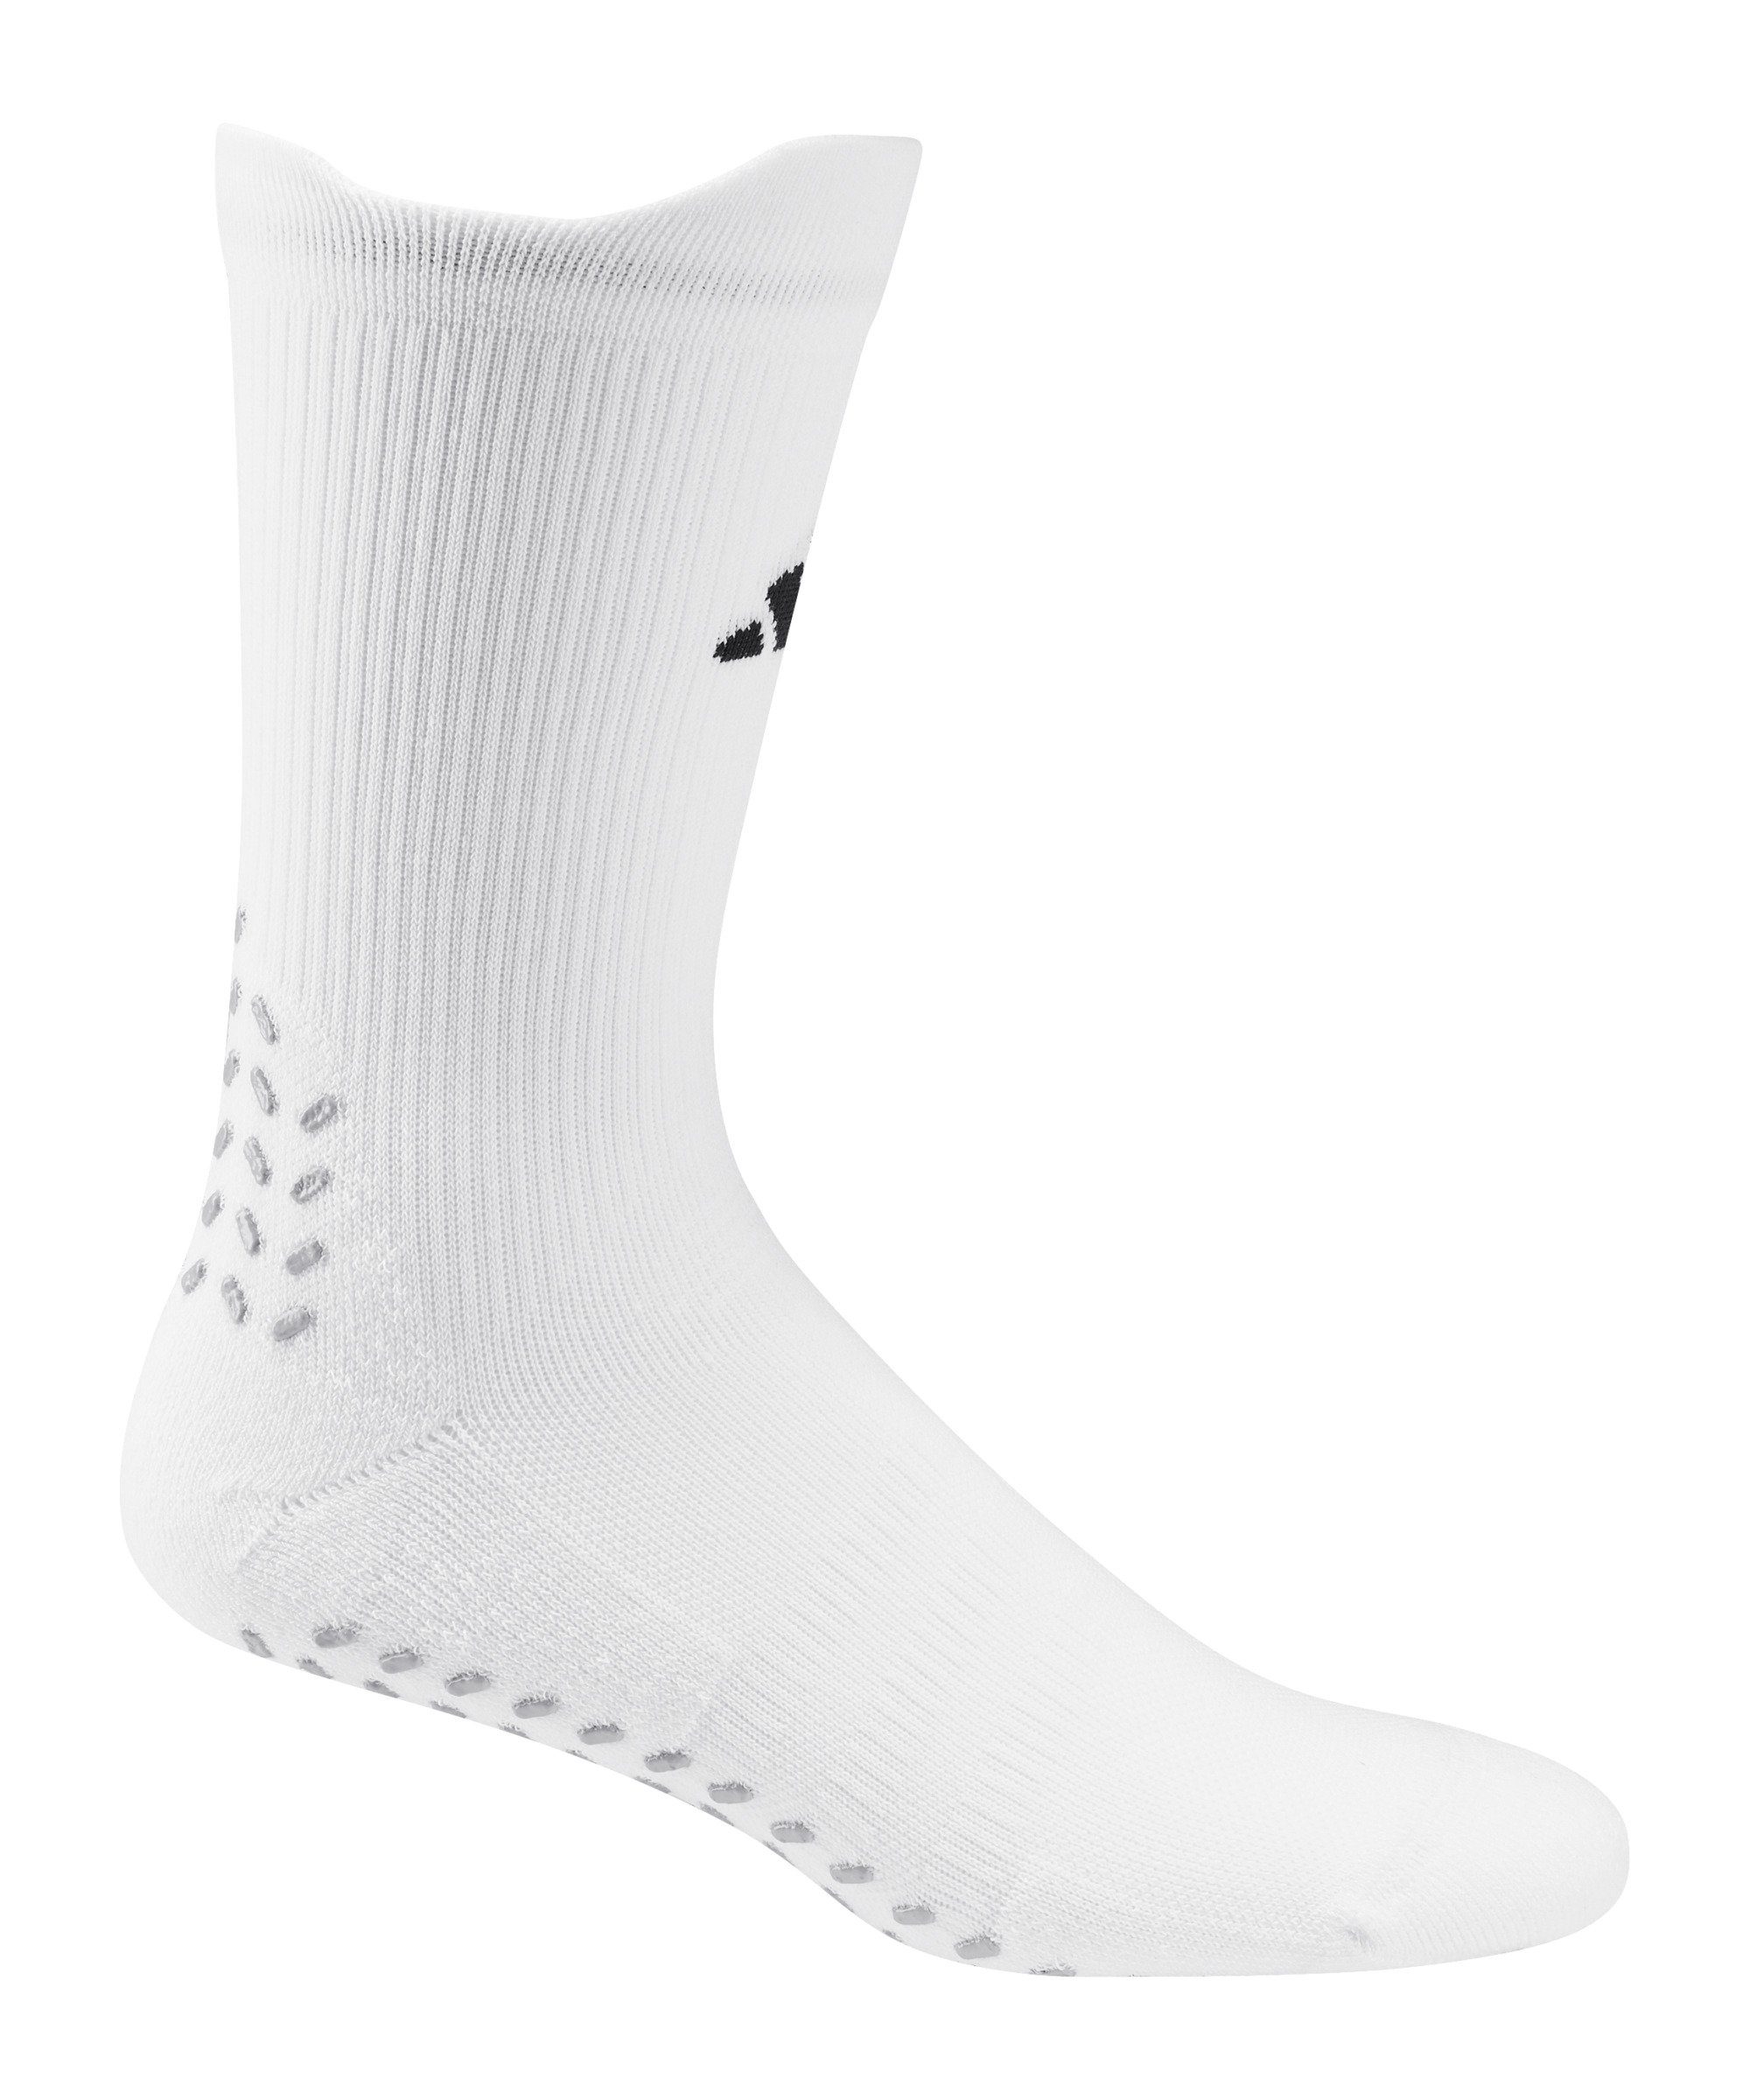 Sportsocken Grip default Print Socken adidas weissschwarz Performance